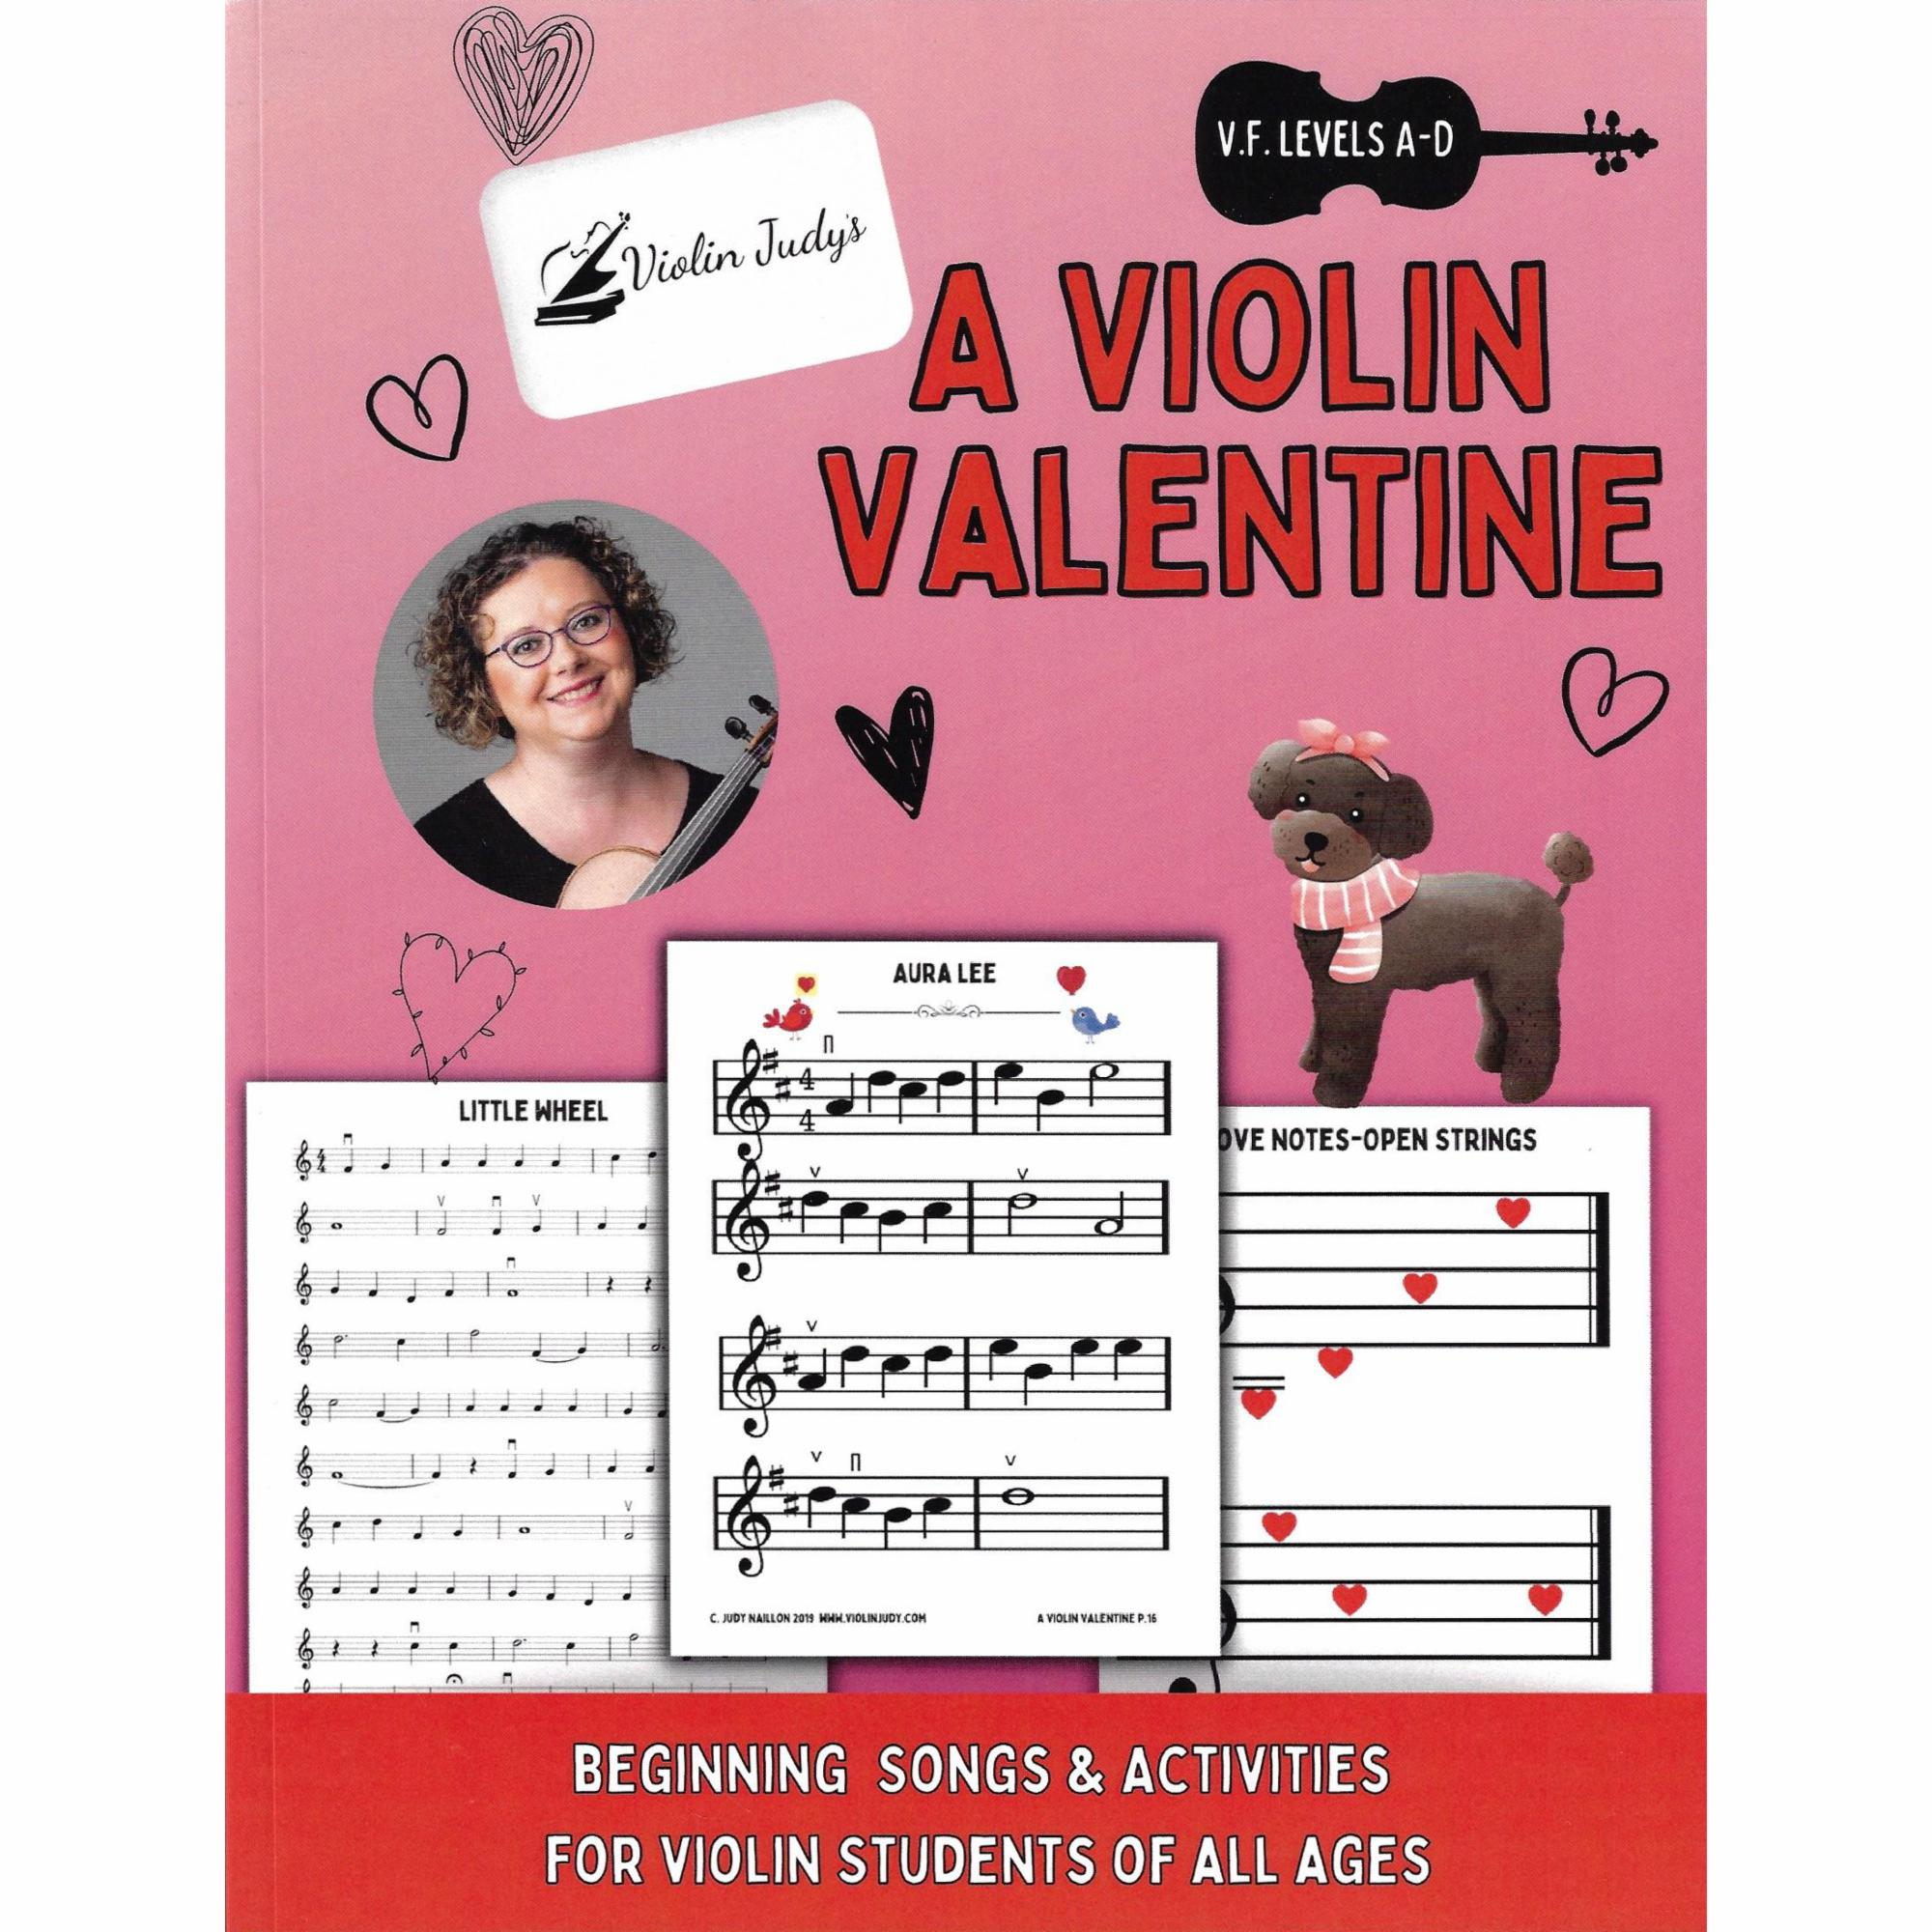 Violin Judy's A Violin Valentine